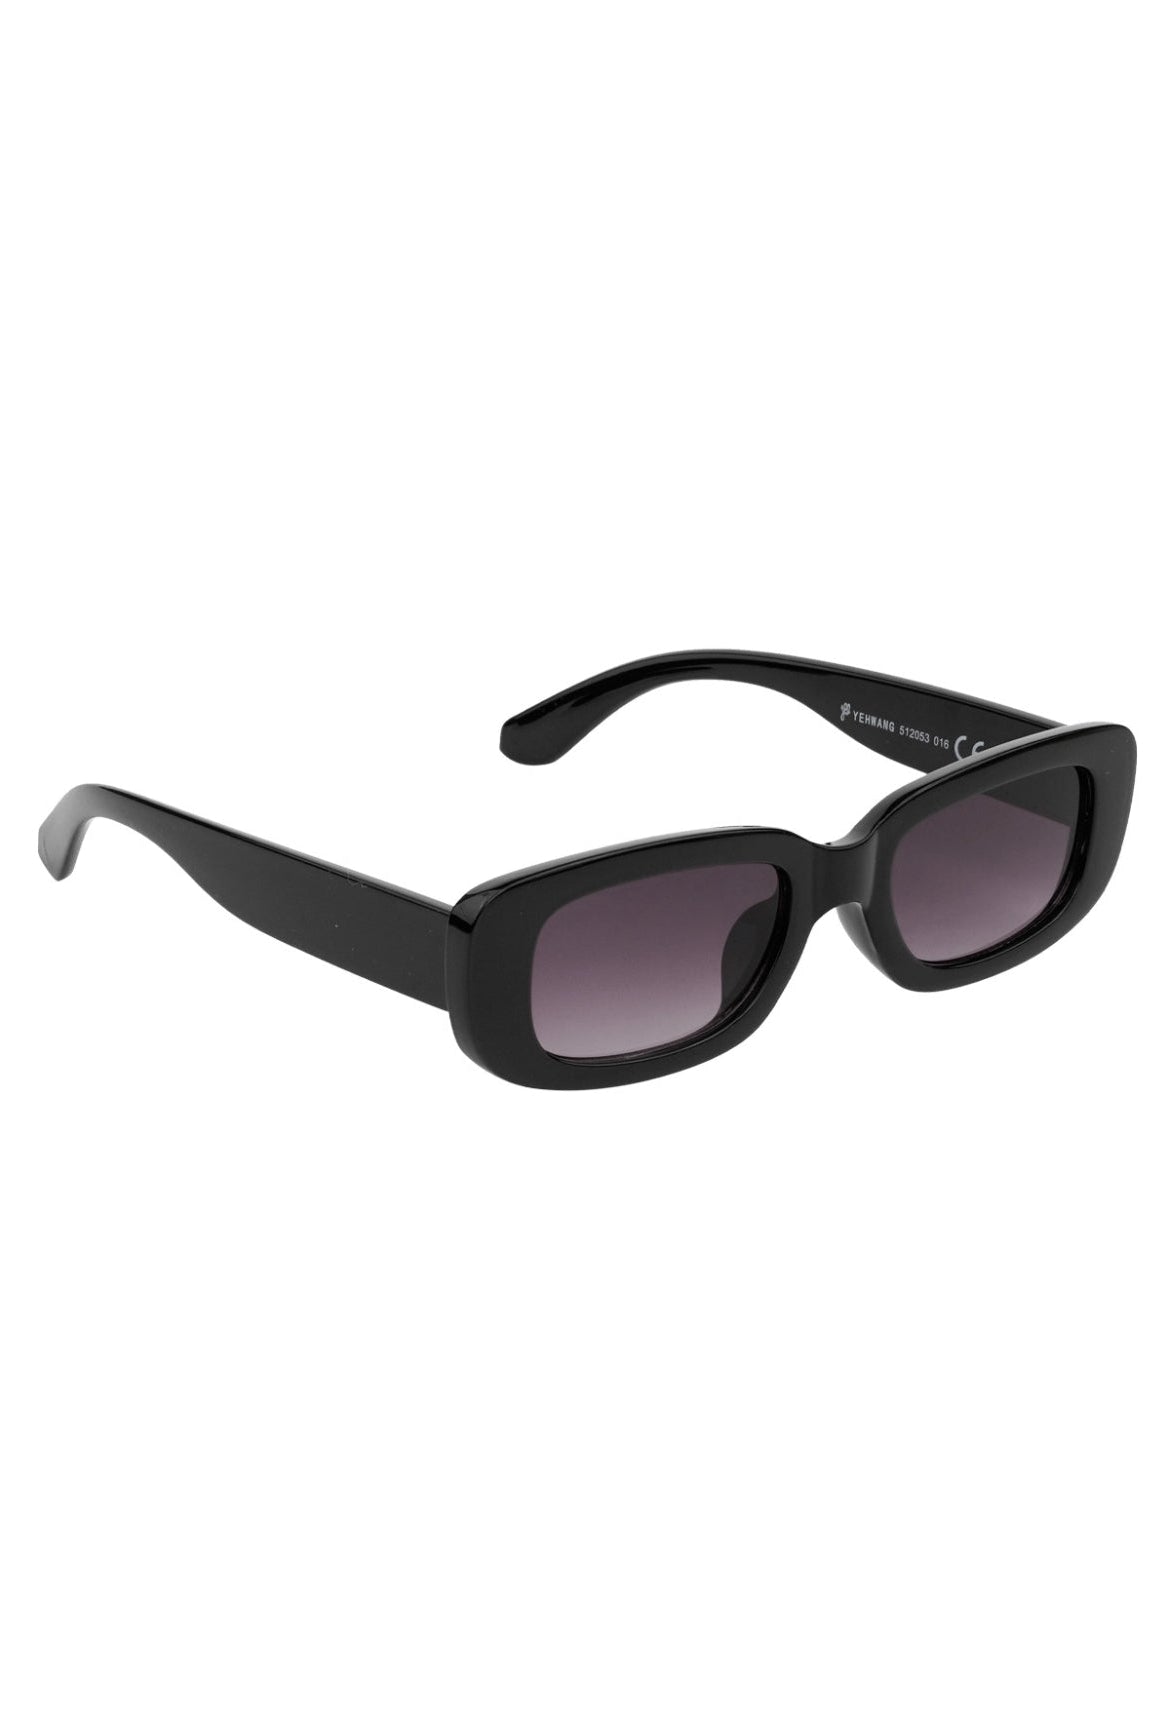 Simple retro black sunglasses -